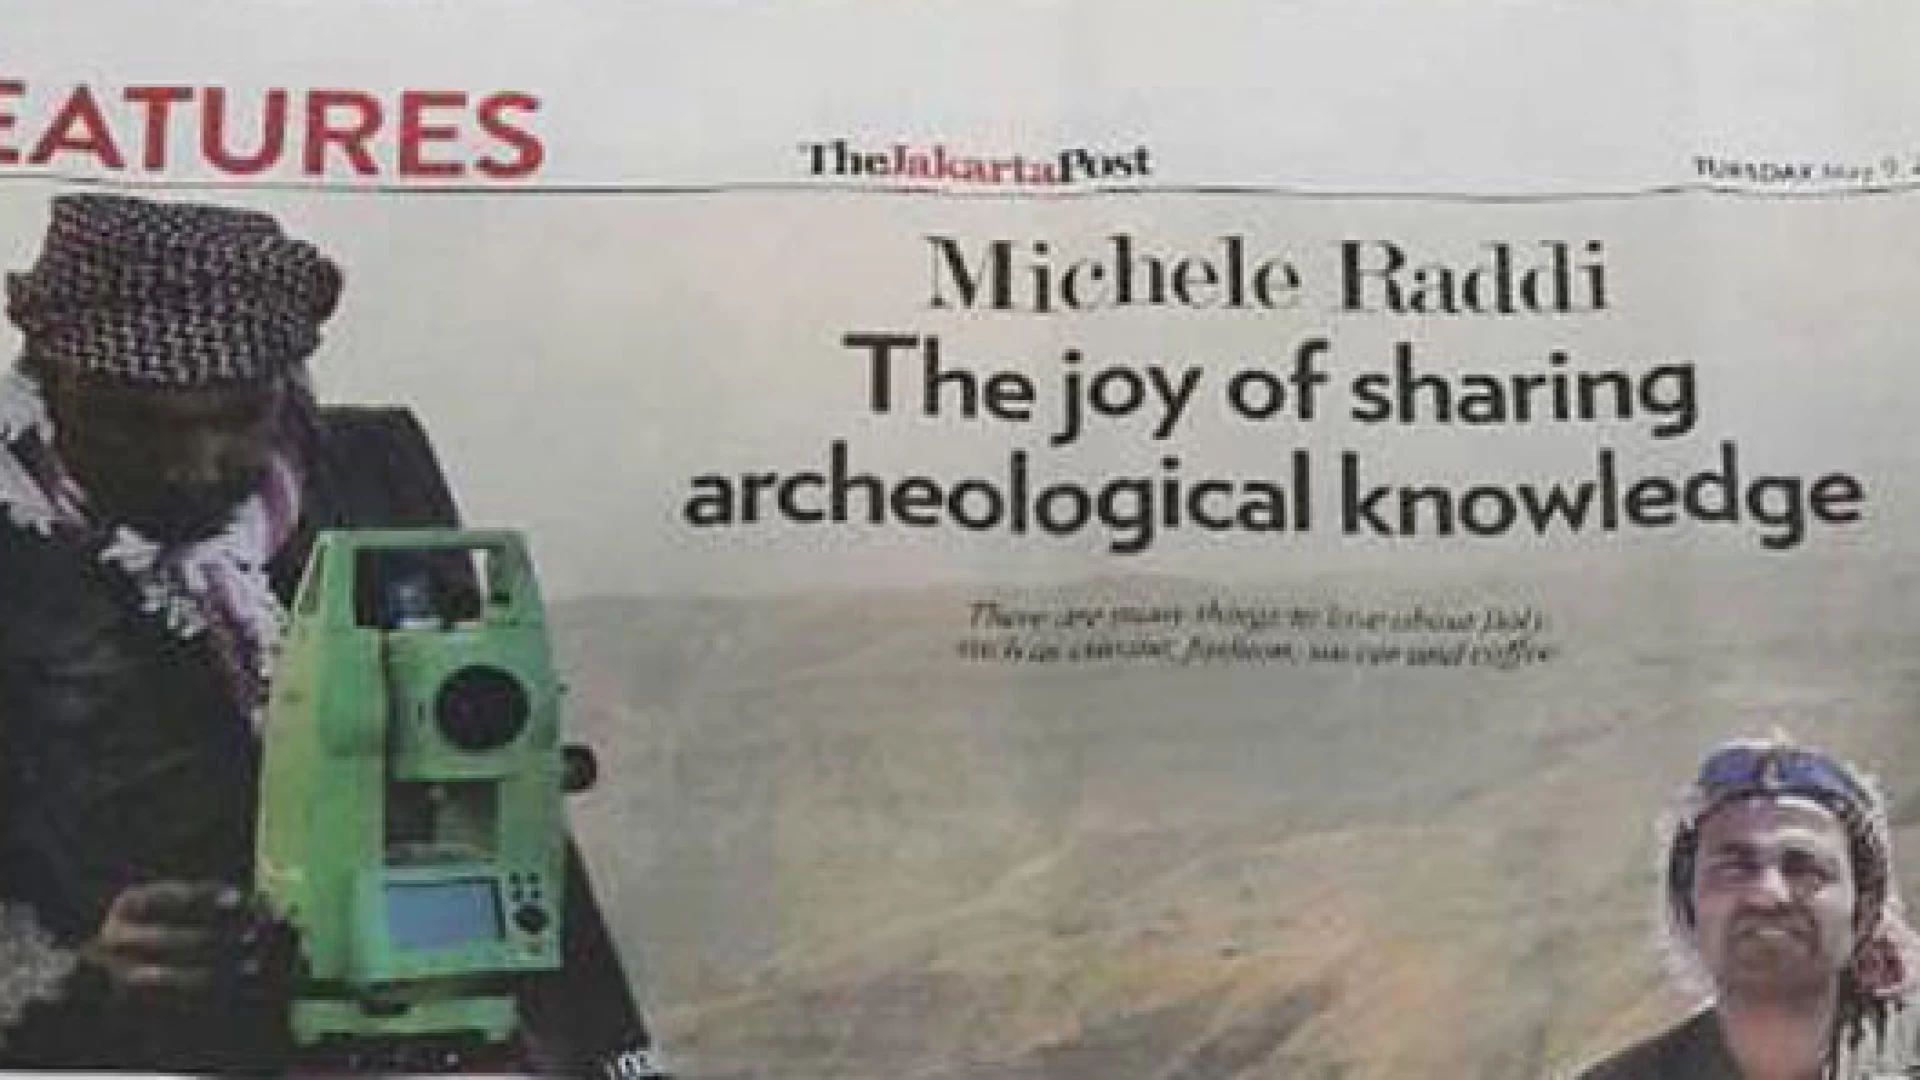 Archeologia: il quotidiano “TheJakartaPost” dedica una pagina intera a Michele Raddi e ai suoi studi di livello internazionale.